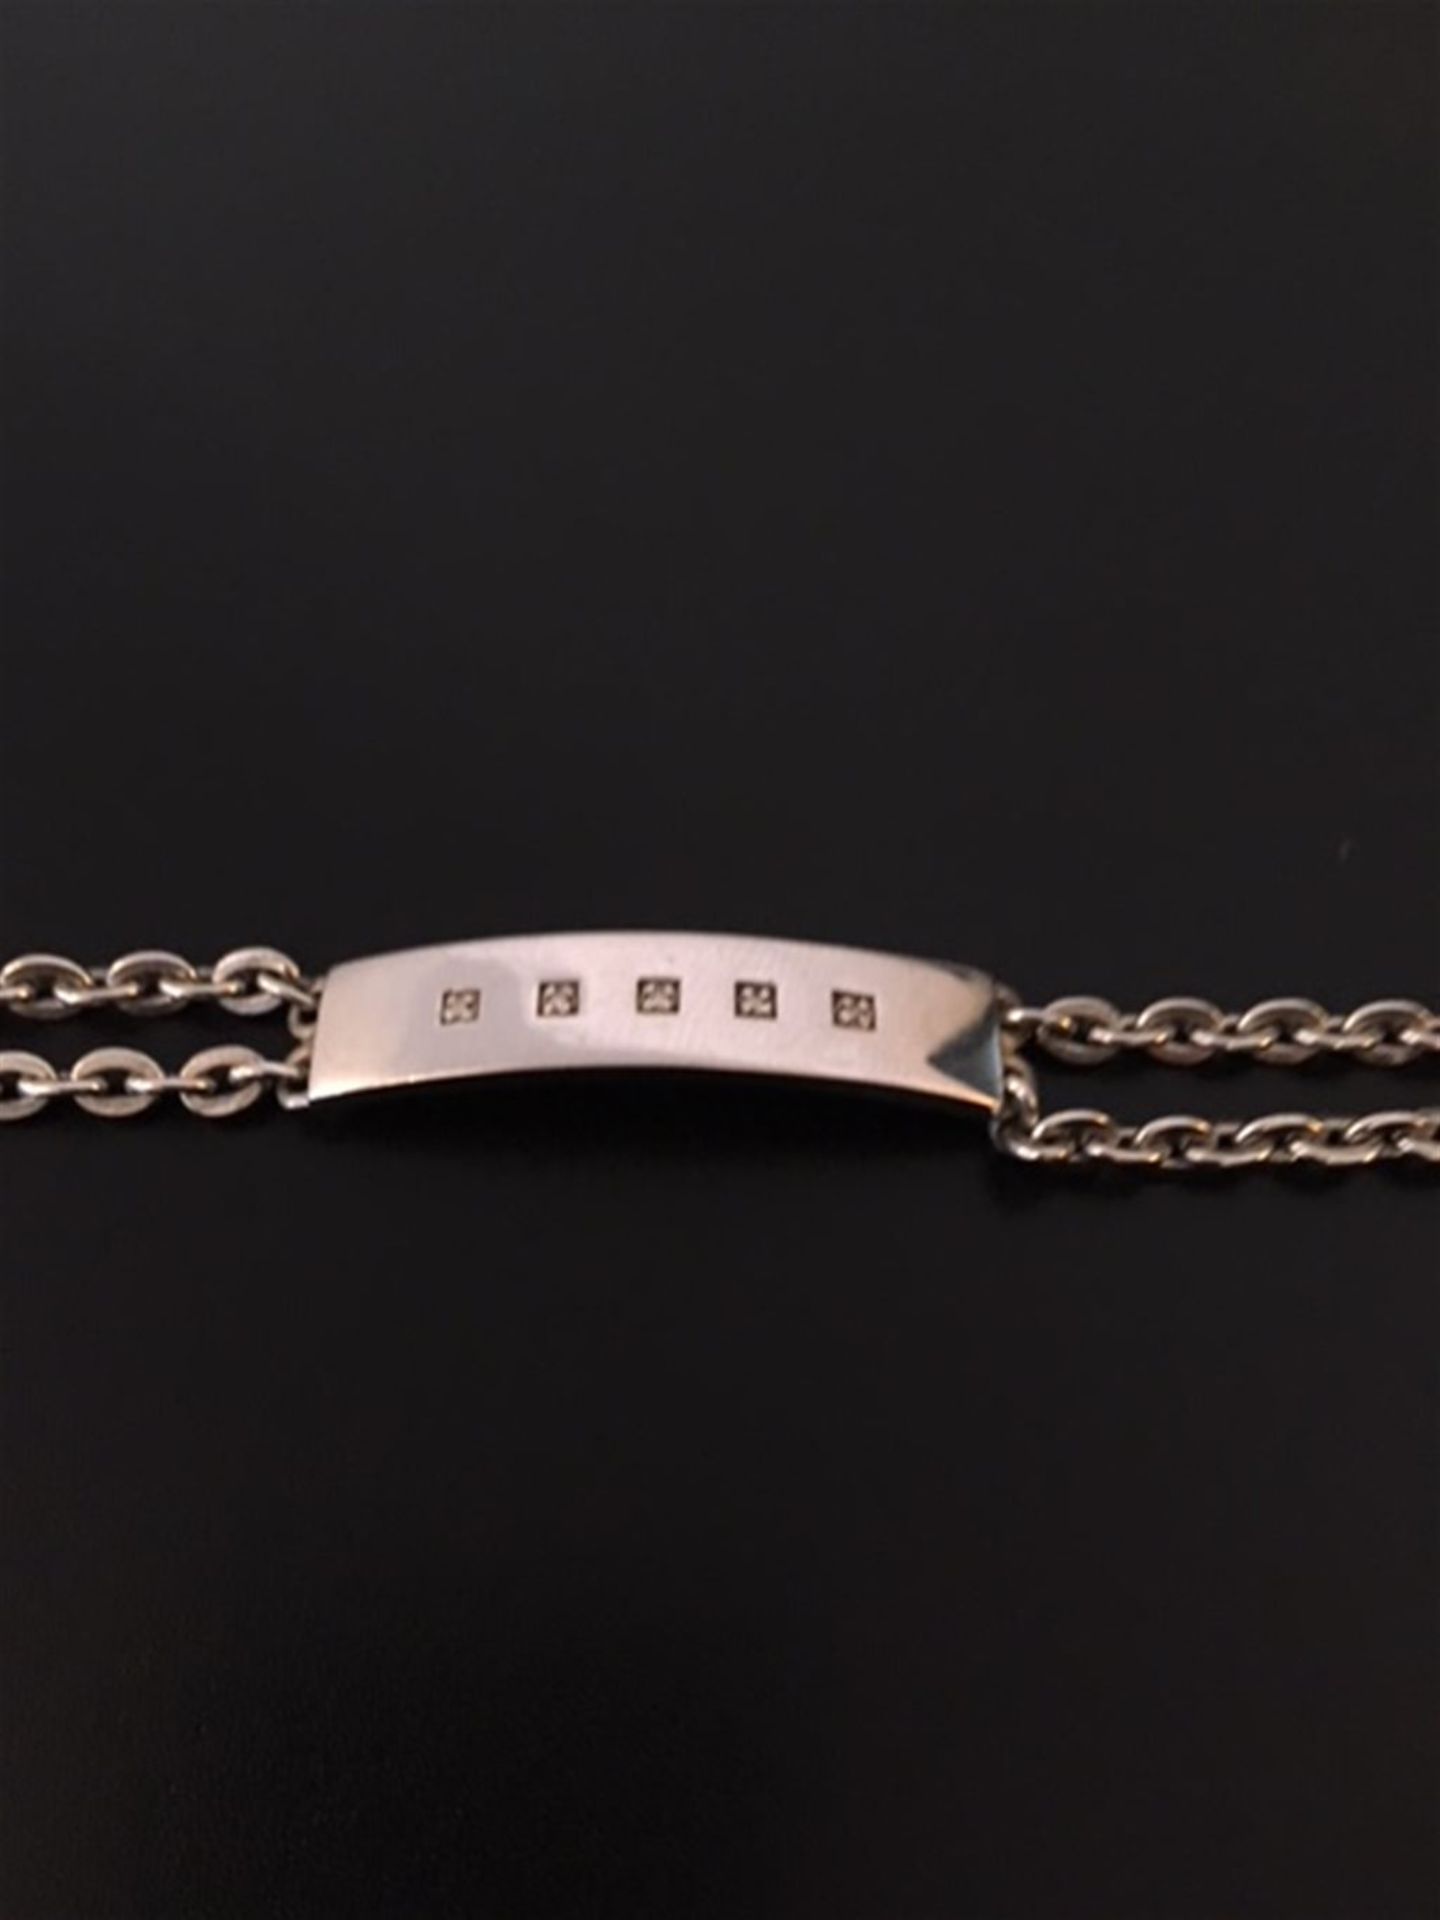 Silver & Diamond set bracelet - Image 2 of 2